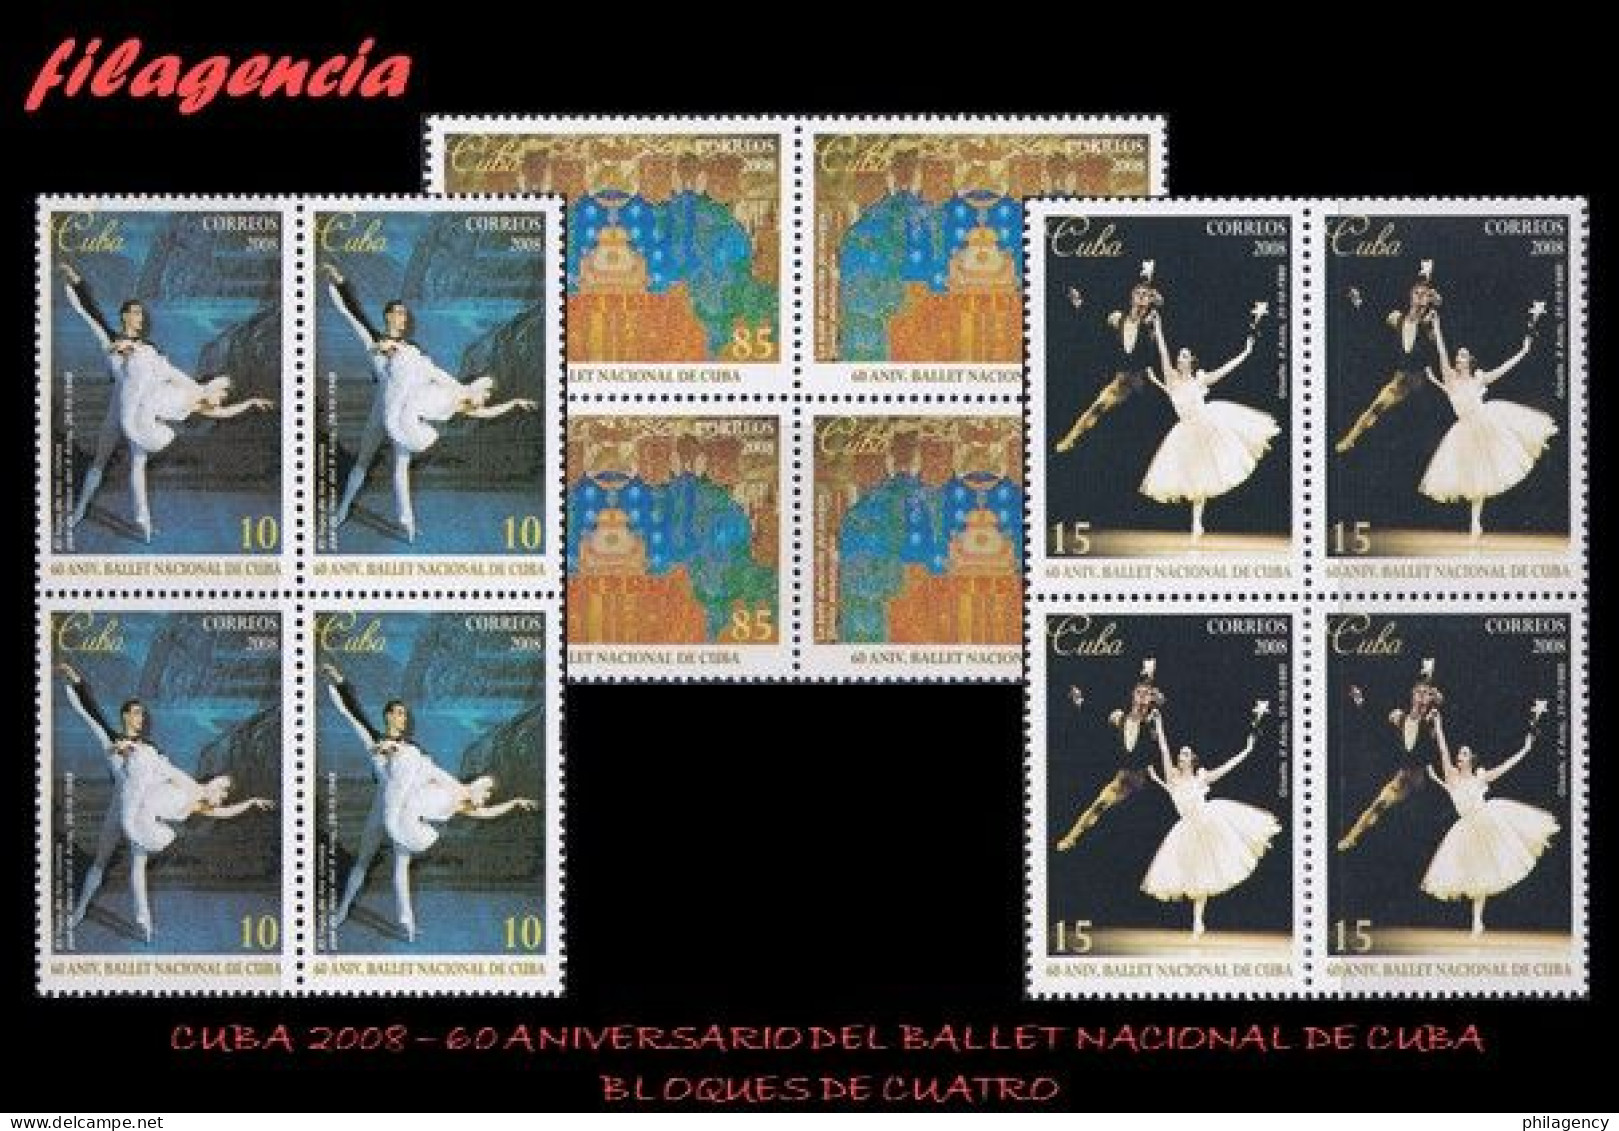 CUBA. BLOQUES DE CUATRO. 2008-29 60 ANIVERSARIO DEL BALLET NACIONAL DE CUBA - Unused Stamps